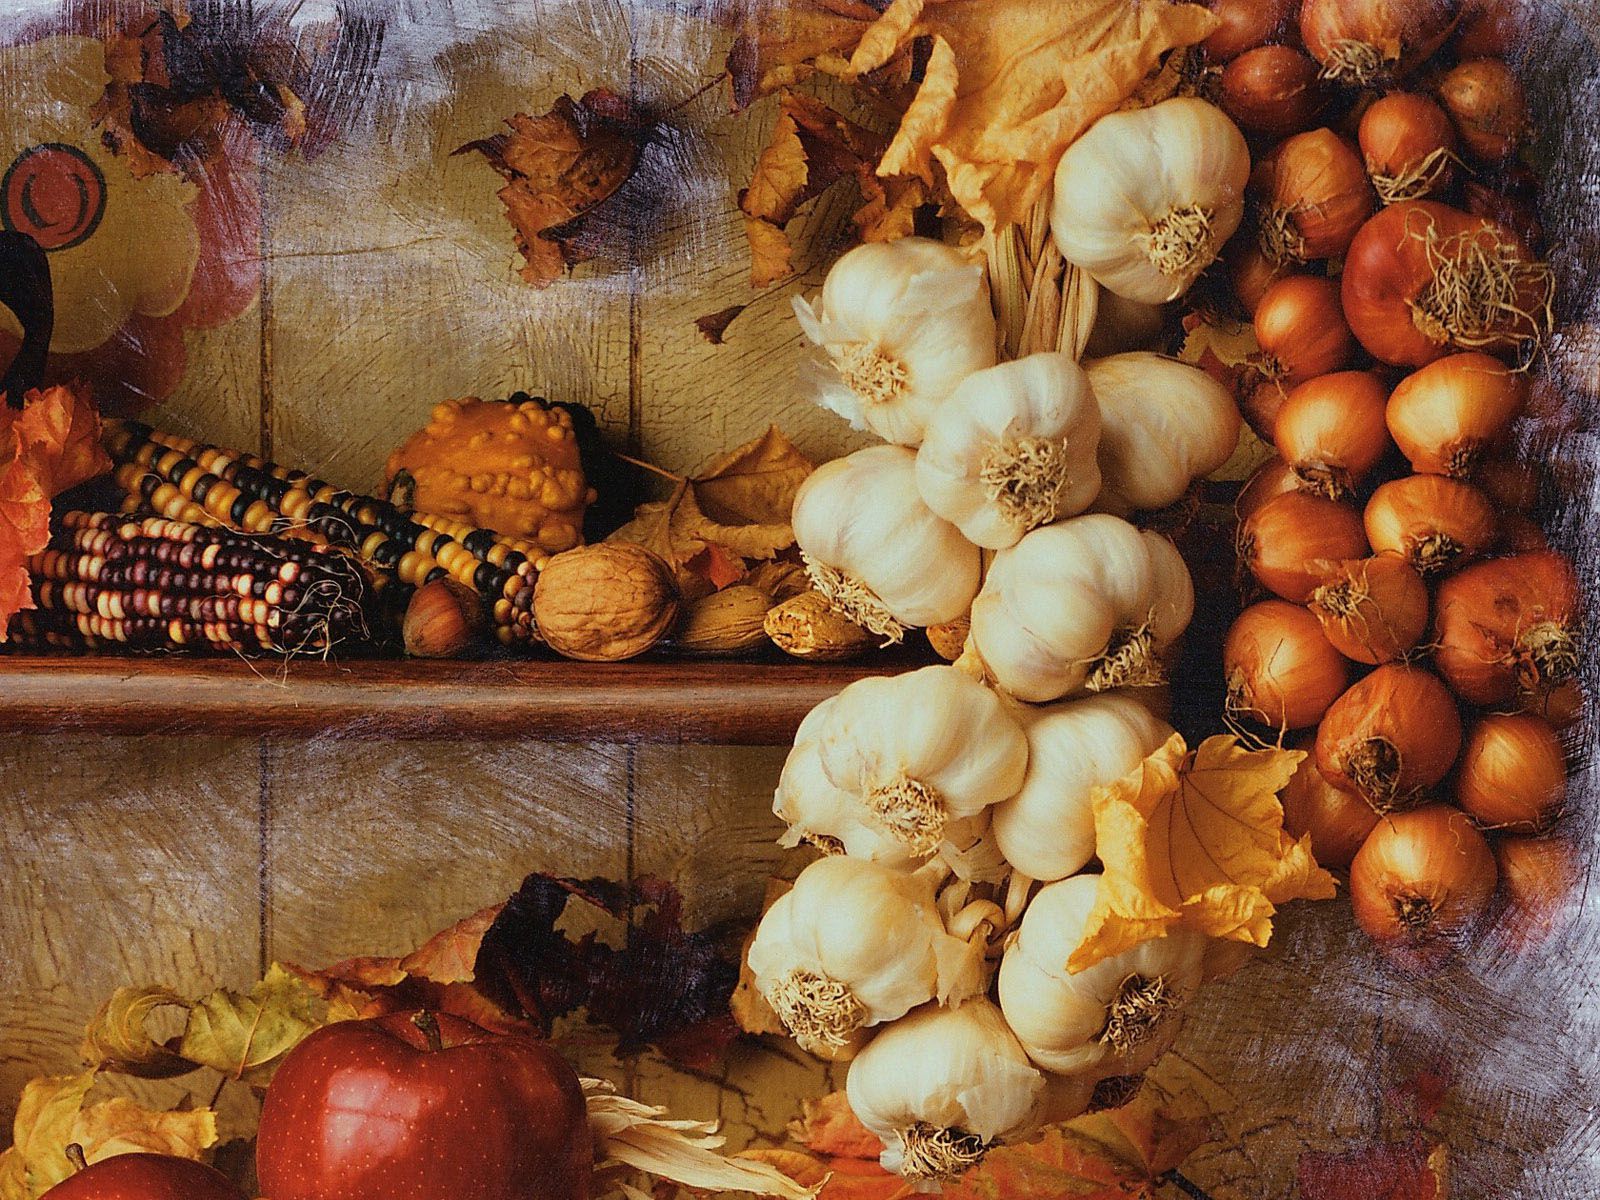 Autumn Harvest wallpaper. Autumn Harvest